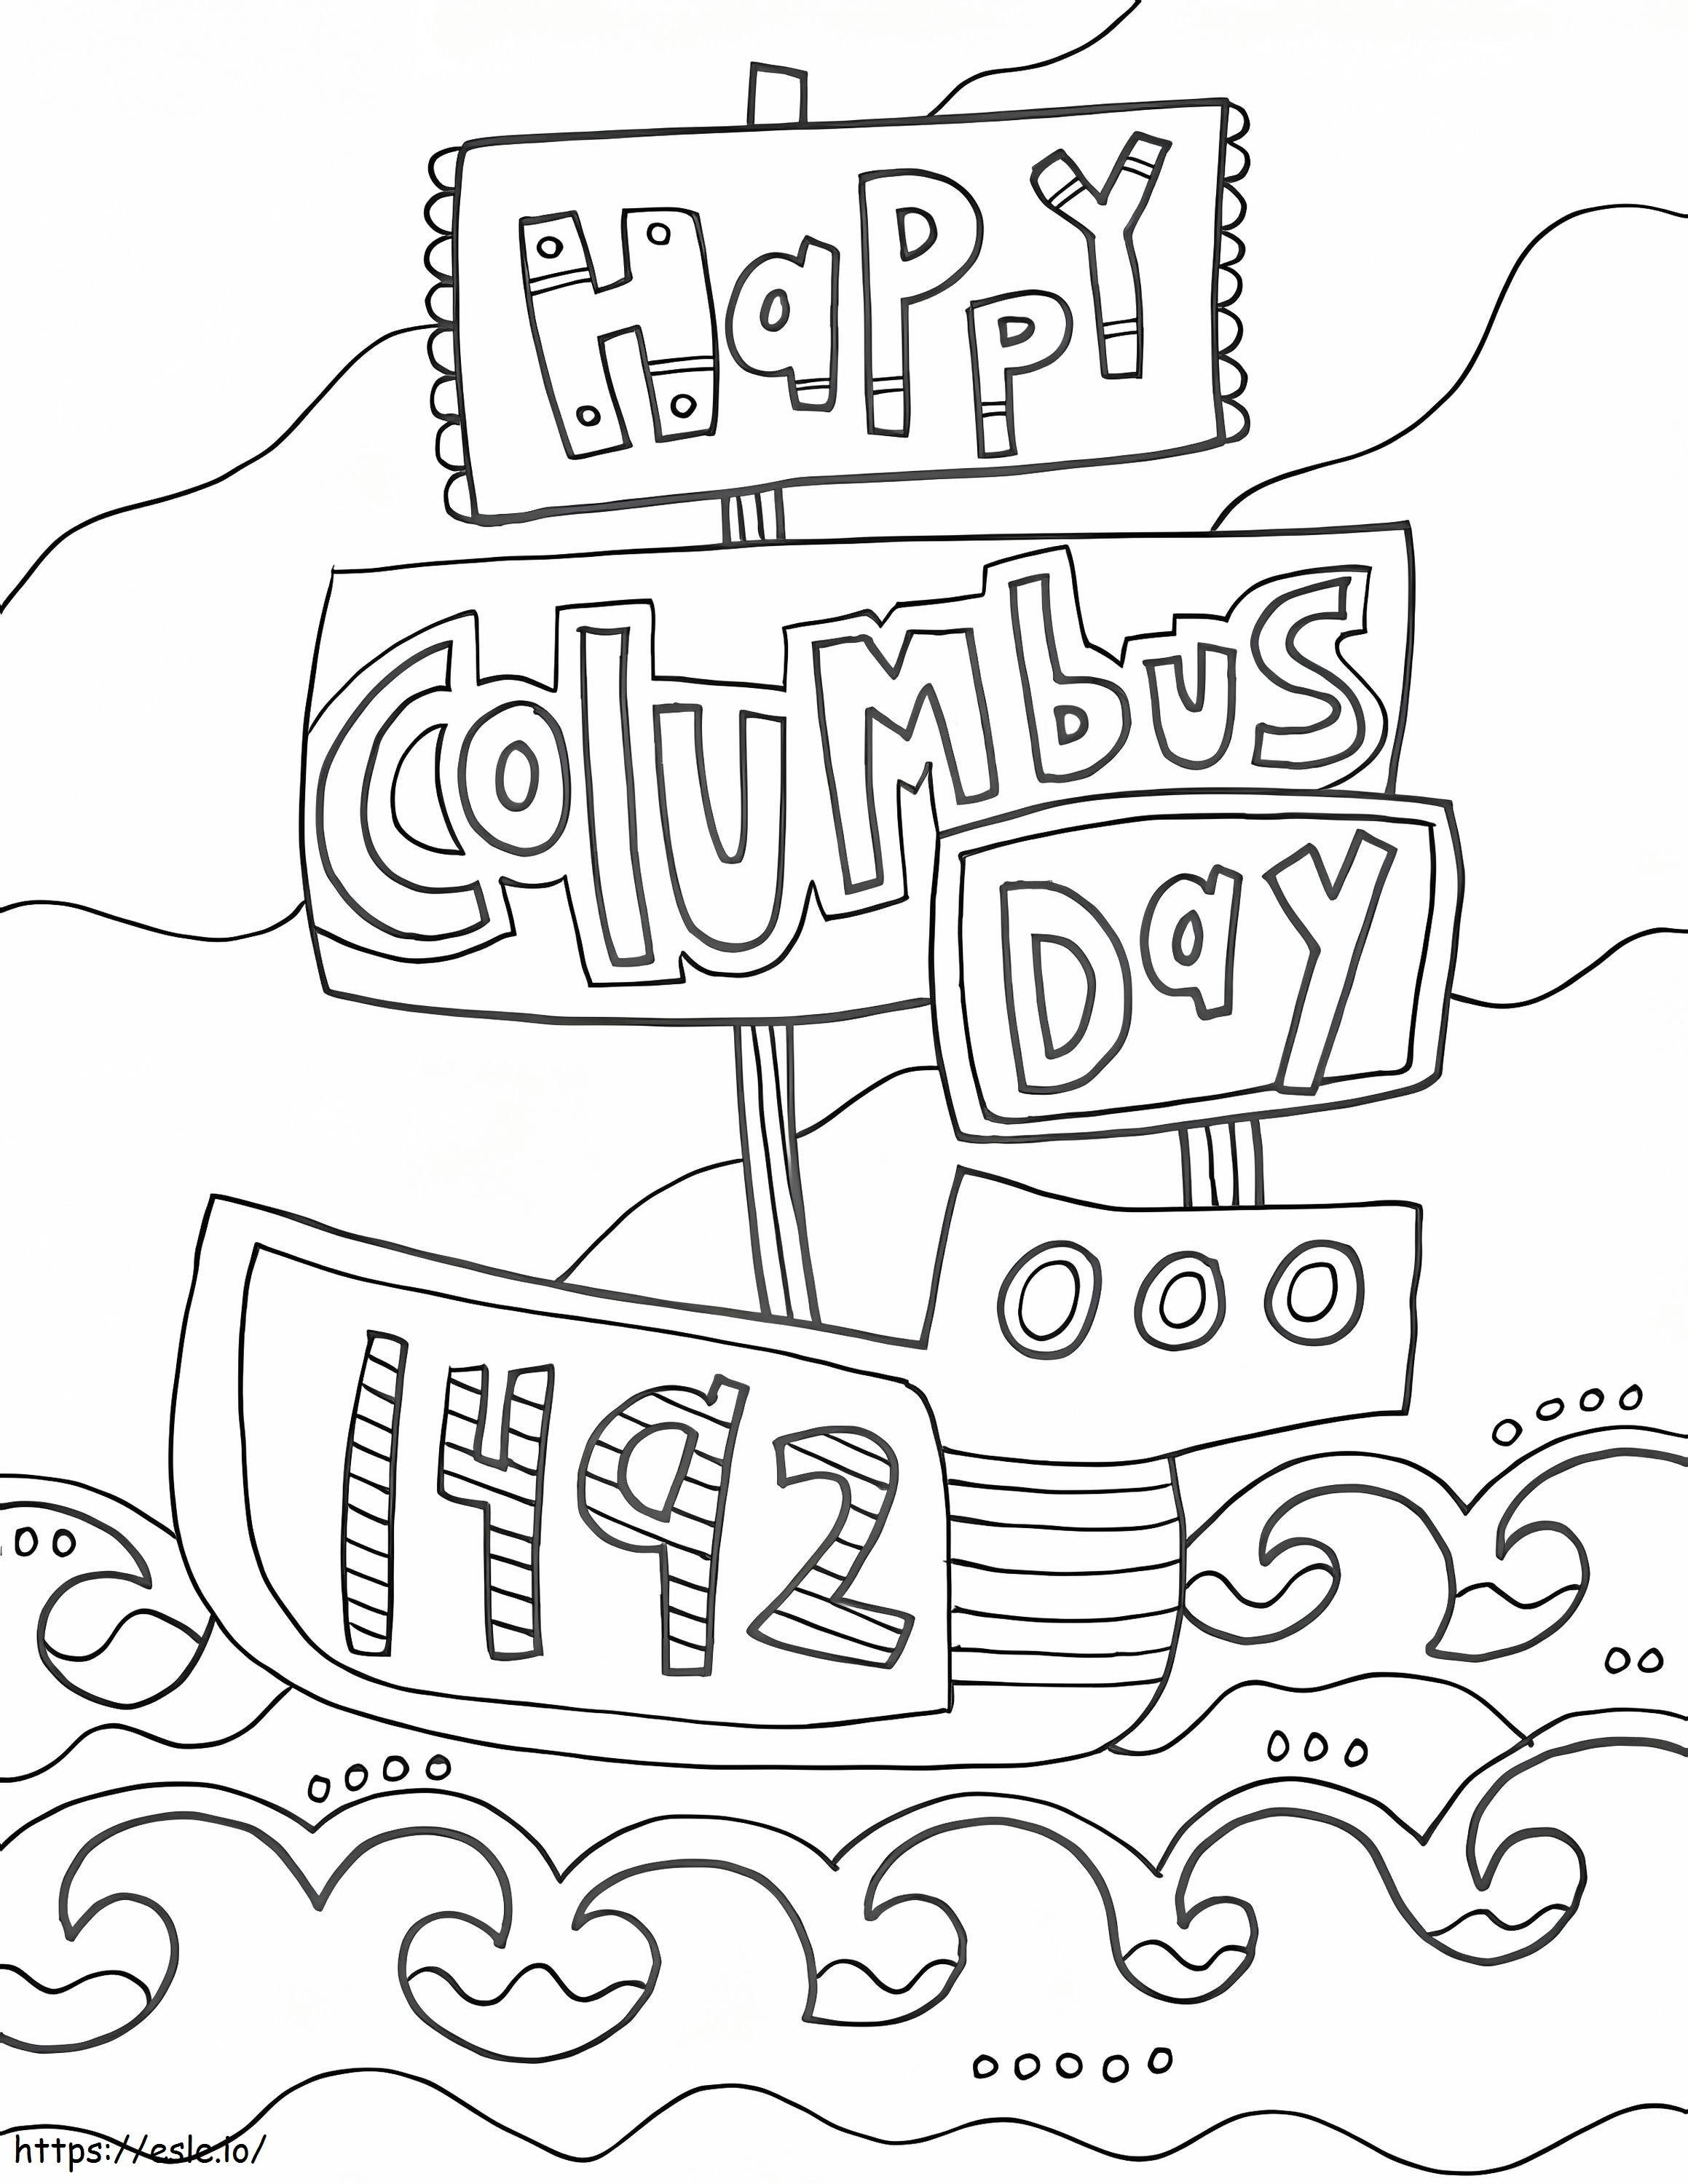 Szczęśliwego Dnia Kolumba 1 kolorowanka